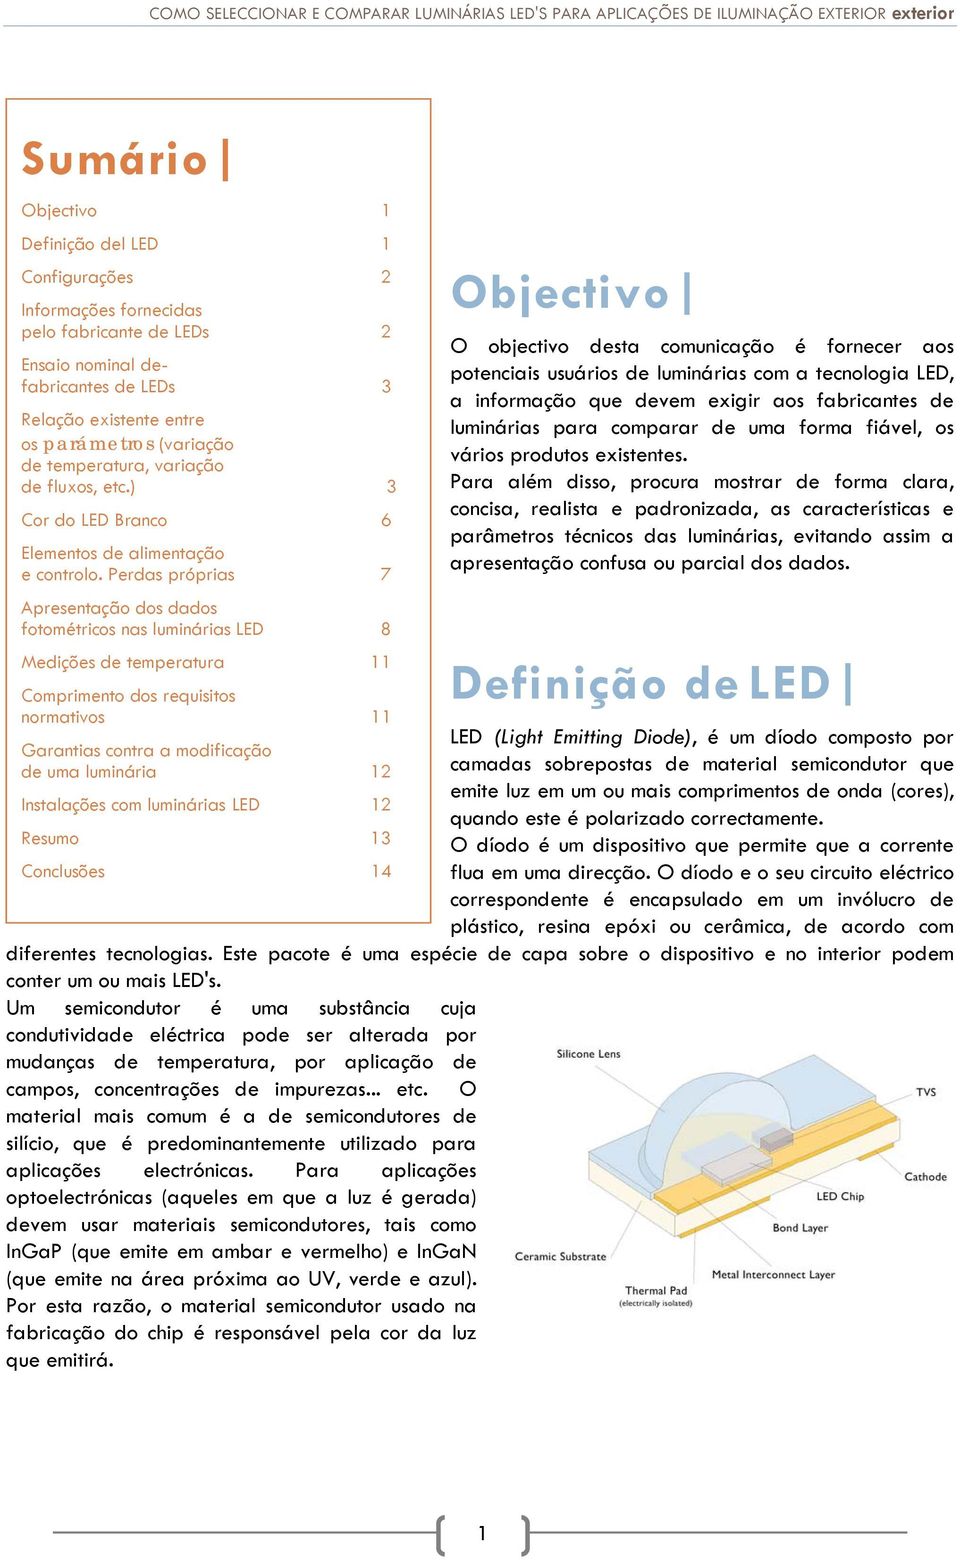 Perdas próprias 7 Apresentação dos dados fotométricos nas luminárias LED 8 Medições de temperatura 11 Comprimento dos requisitos normativos 11 Garantias contra a modificação de uma luminária 12